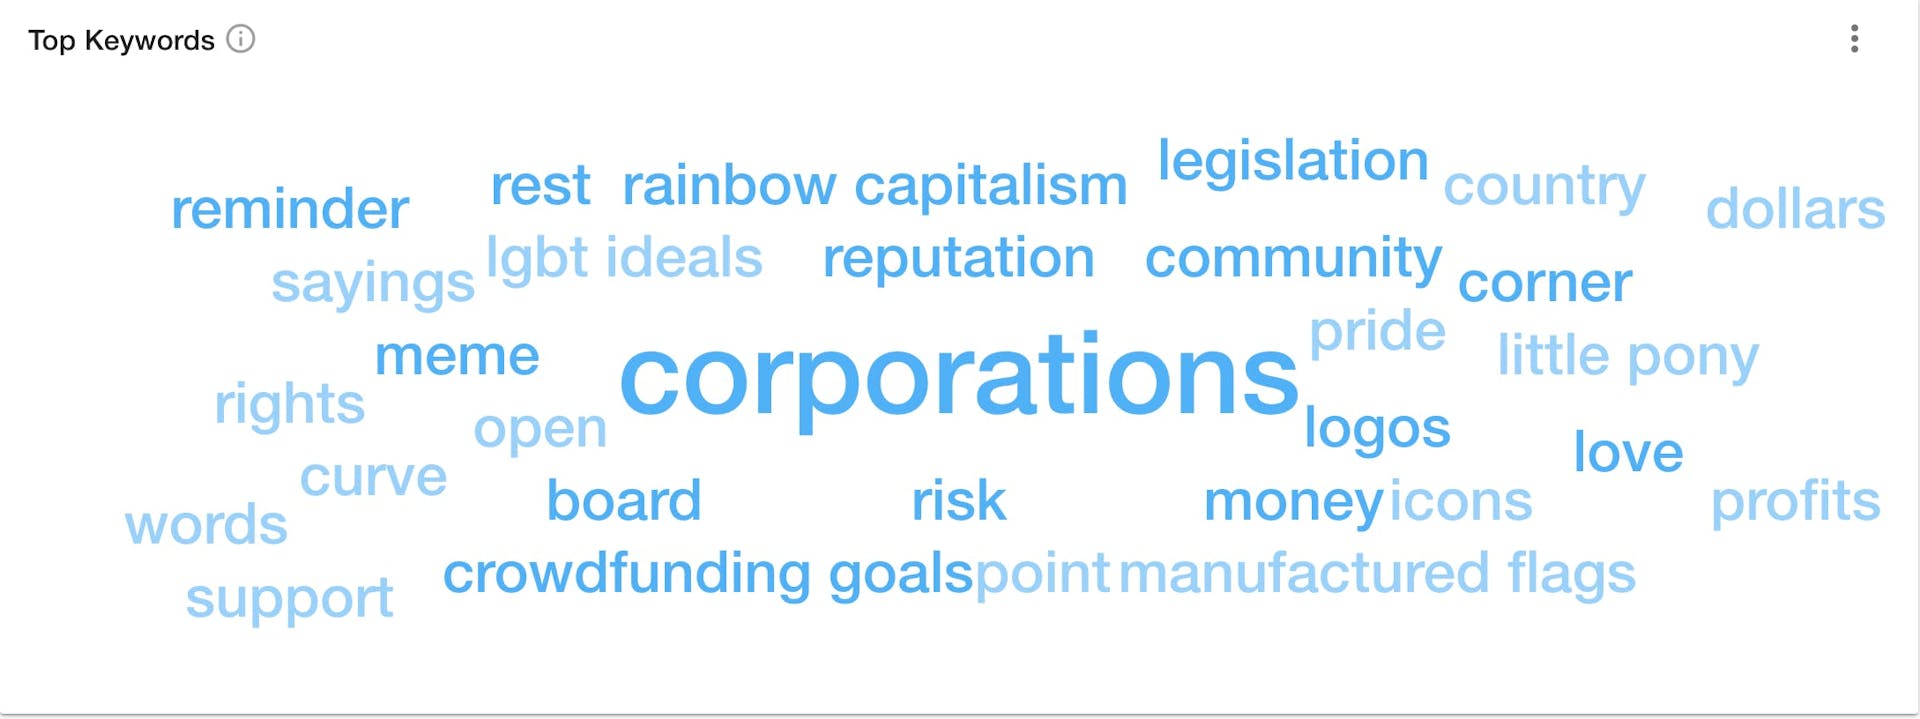 Avainsanapilvi Explore-alustalla näyttää sanaa "corporations" suurimpana tumman sinisellä, ympärillään pienempiä vaalean sinisenä kirjoitettuja sanoja kuten ''rainbow capitalism'', ''logos'', ''legislation'', ''crowdfunding goals'', ja ''community''.